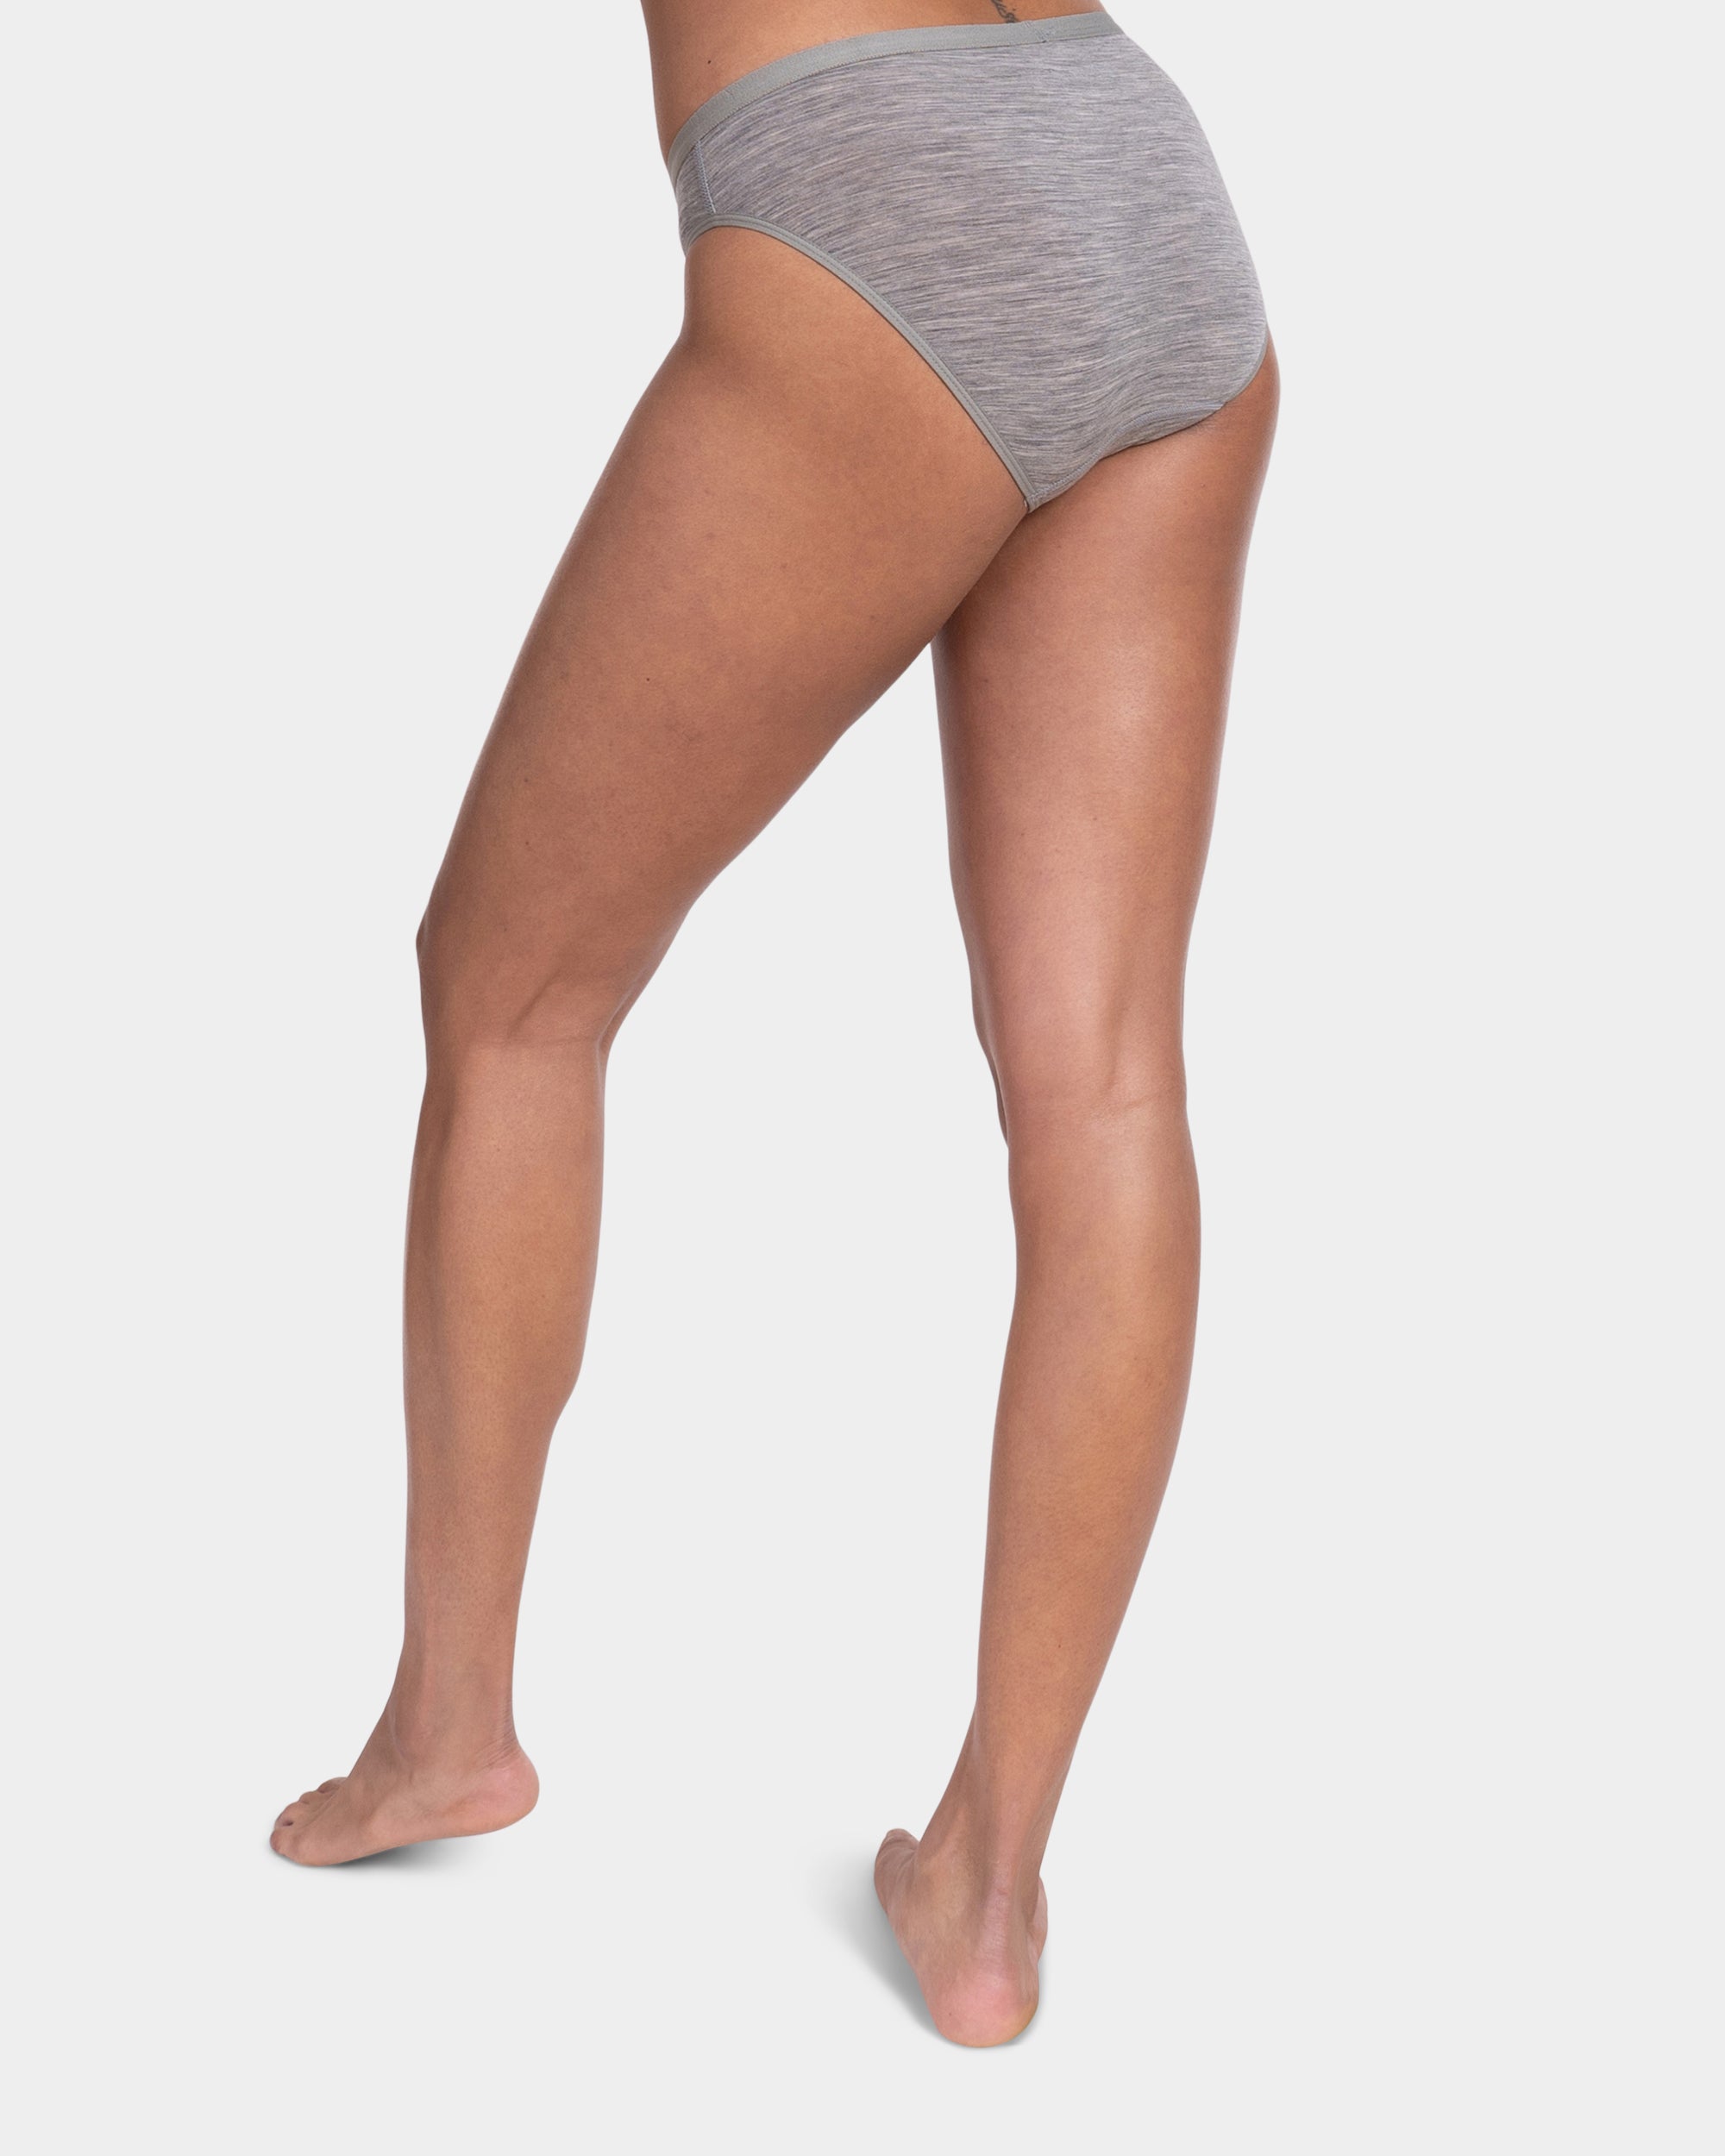 Women's Merino Full Brief Underwear